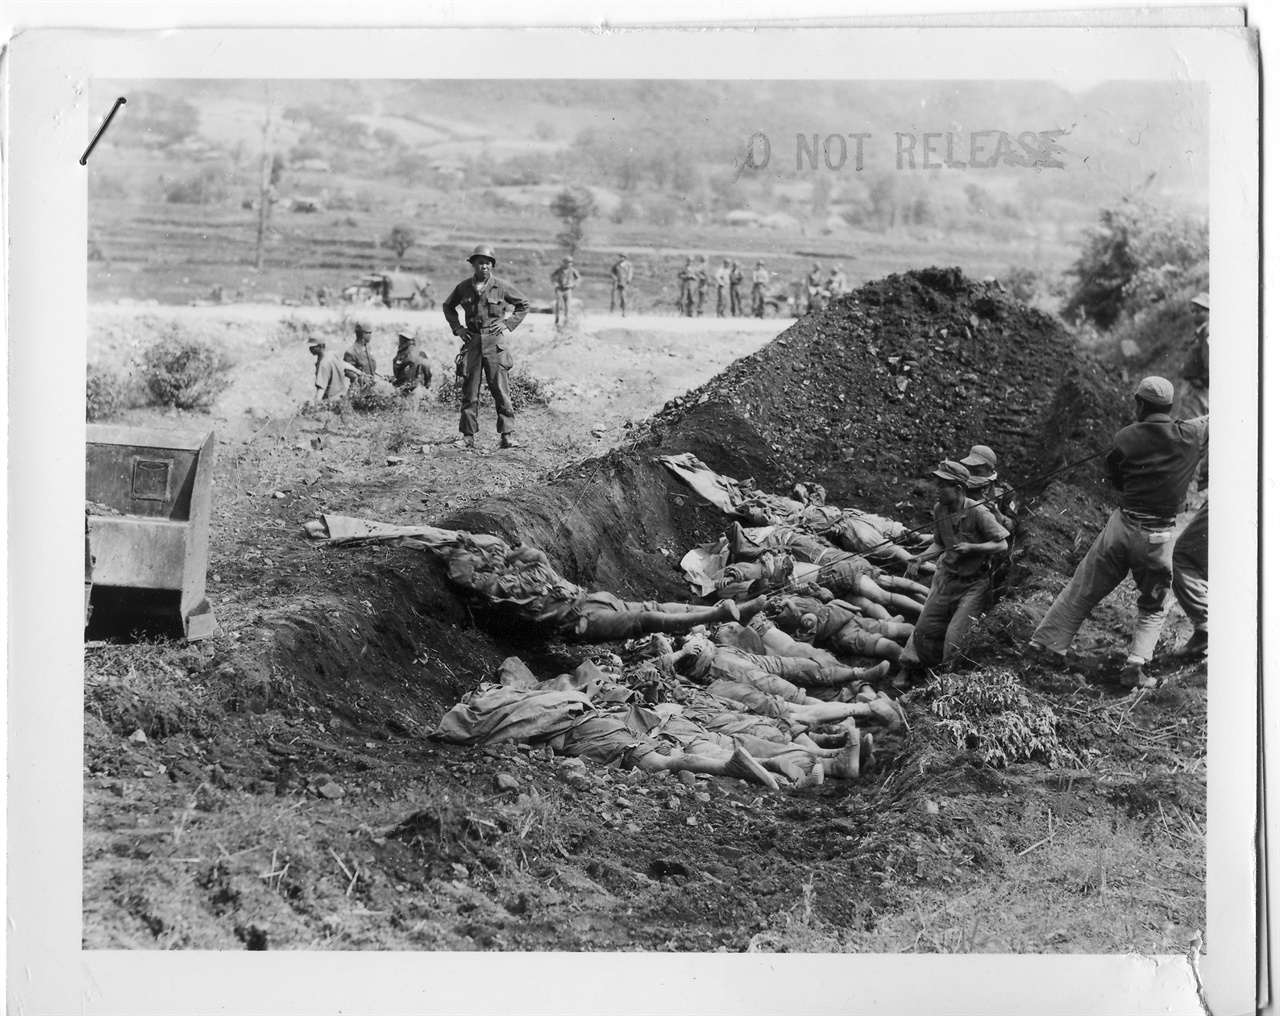  1951. 5. 17. 중부전선. 유엔군 병사들이 중국군 시신들을 매장하고자 구덩이로 모으고 있다. 